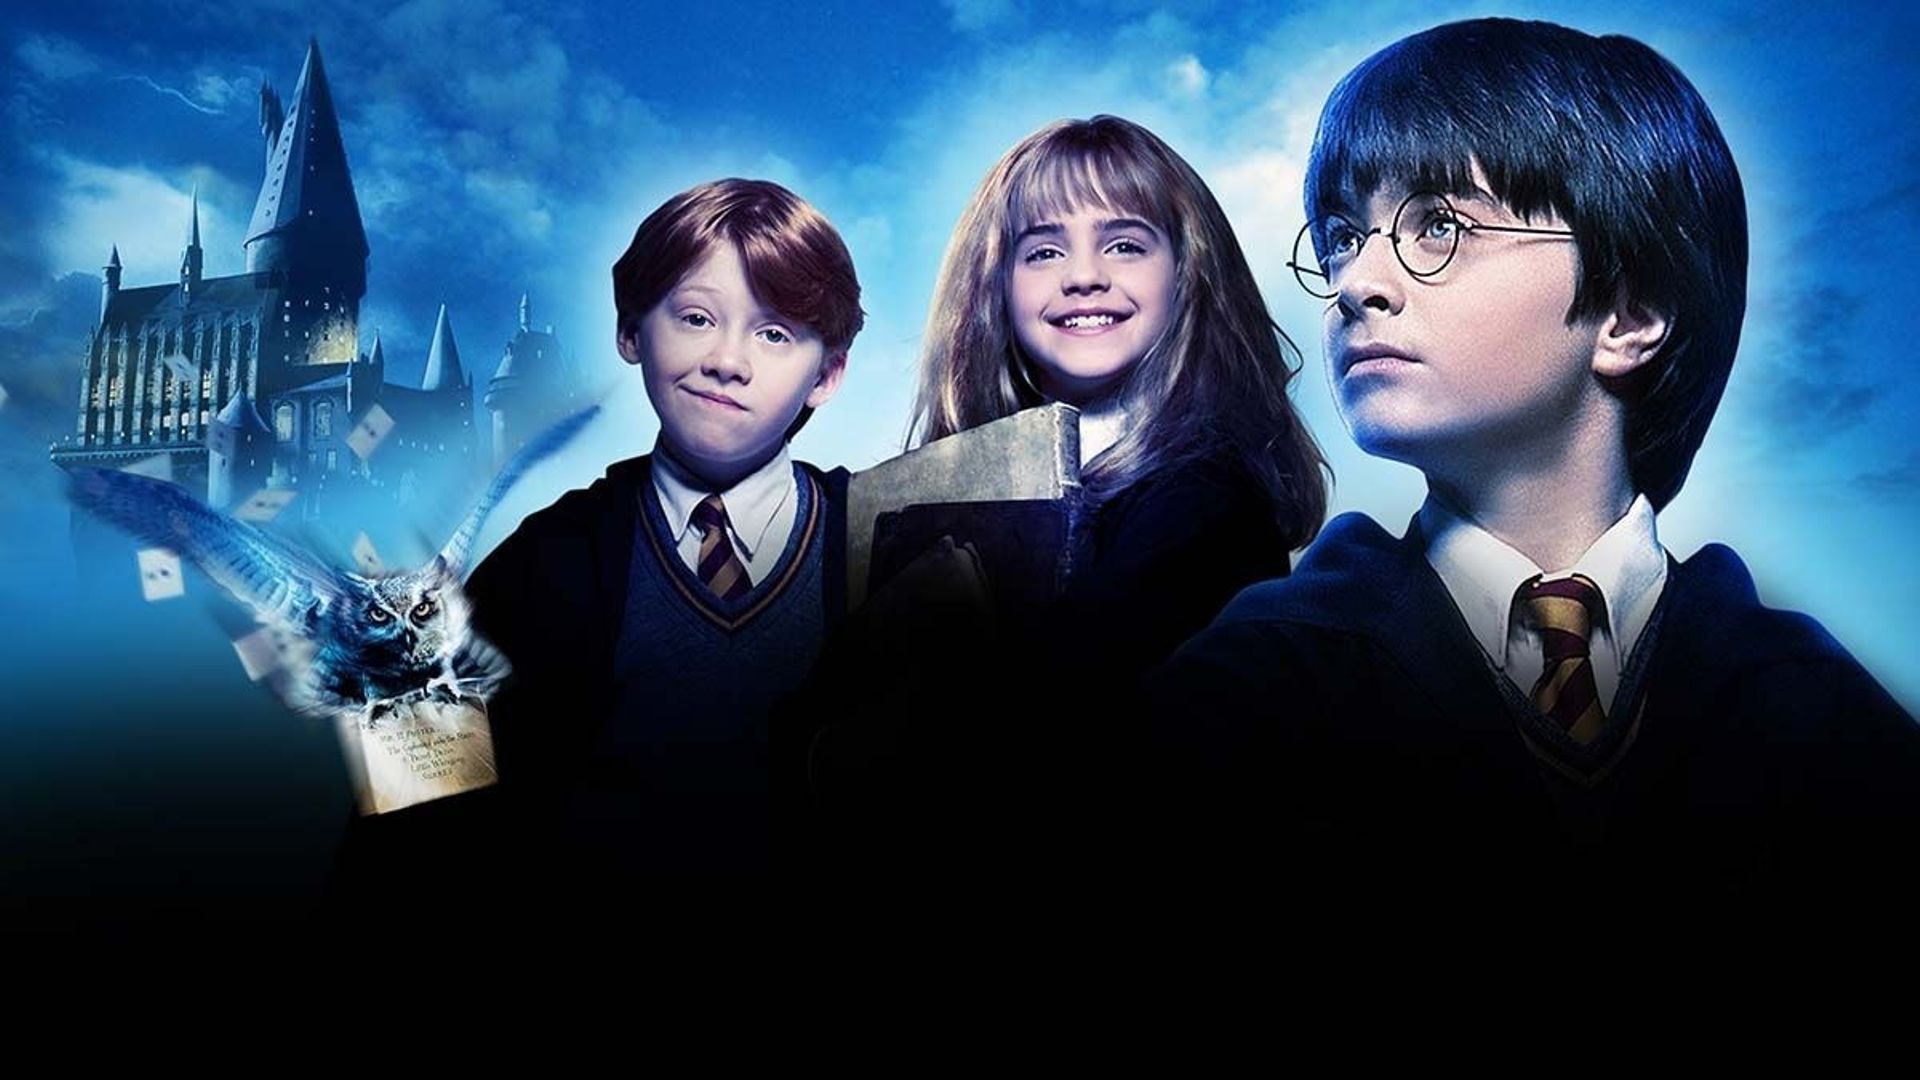 Comment faire une baguette magique d'Harry Potter ?  Harry potter,  Anecdotes sur harry potter, Fans d'harry potter